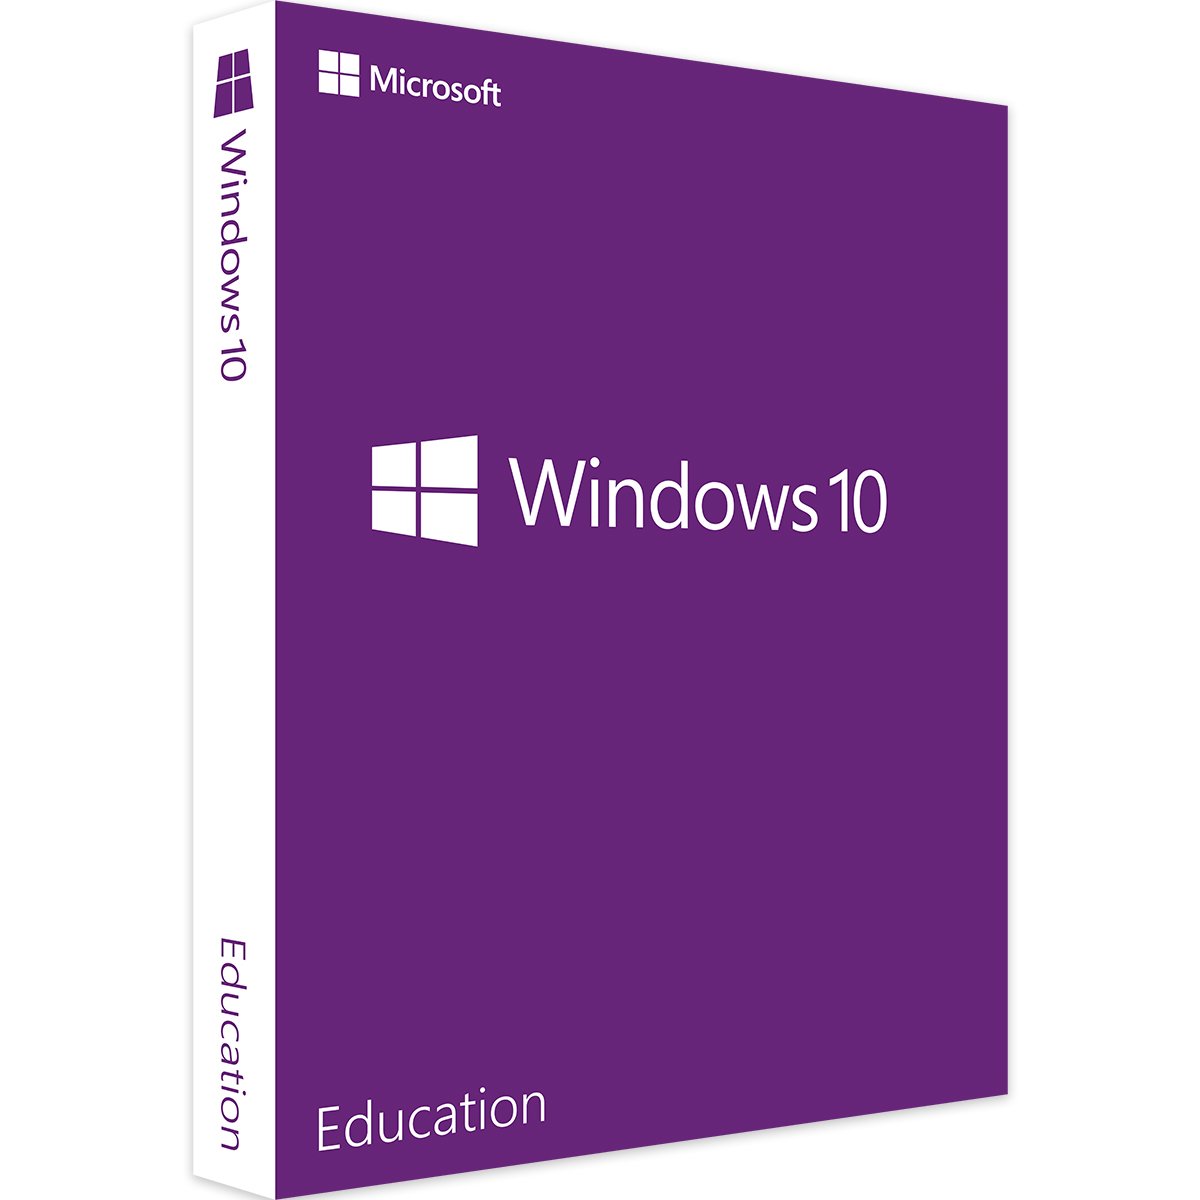 Windows 10 Education - Produktschlüssel - Vollversion - Sofort-Download - 1 PC von Microsoft